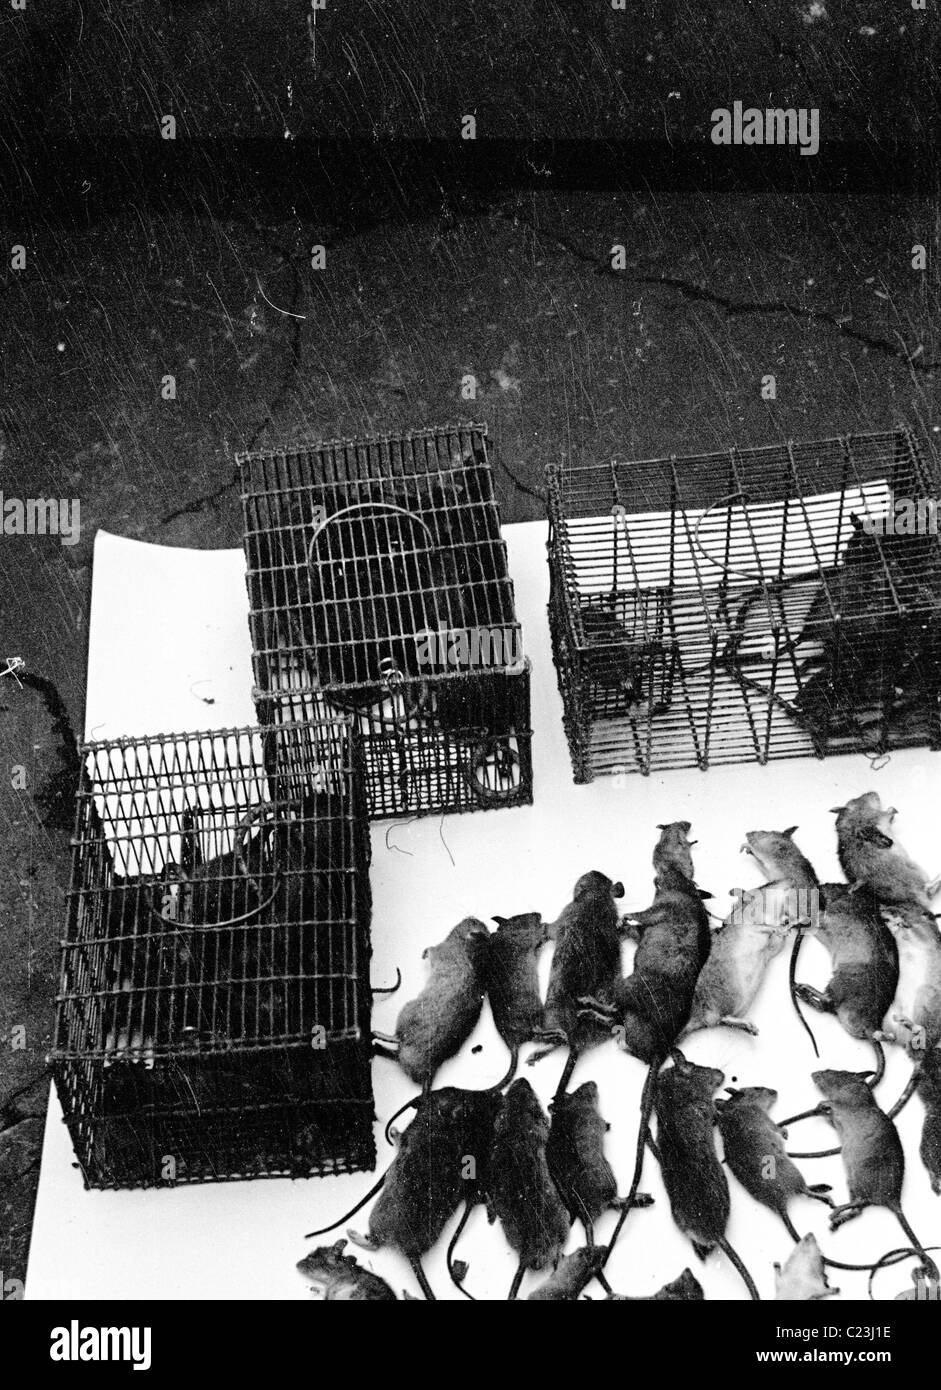 England der 1950er Jahre. Sammlung von toten Ratten auf einem Tisch neben den Käfigen, dass sie in diesem historischen Bild gefangen wurden angezeigt. Stockfoto